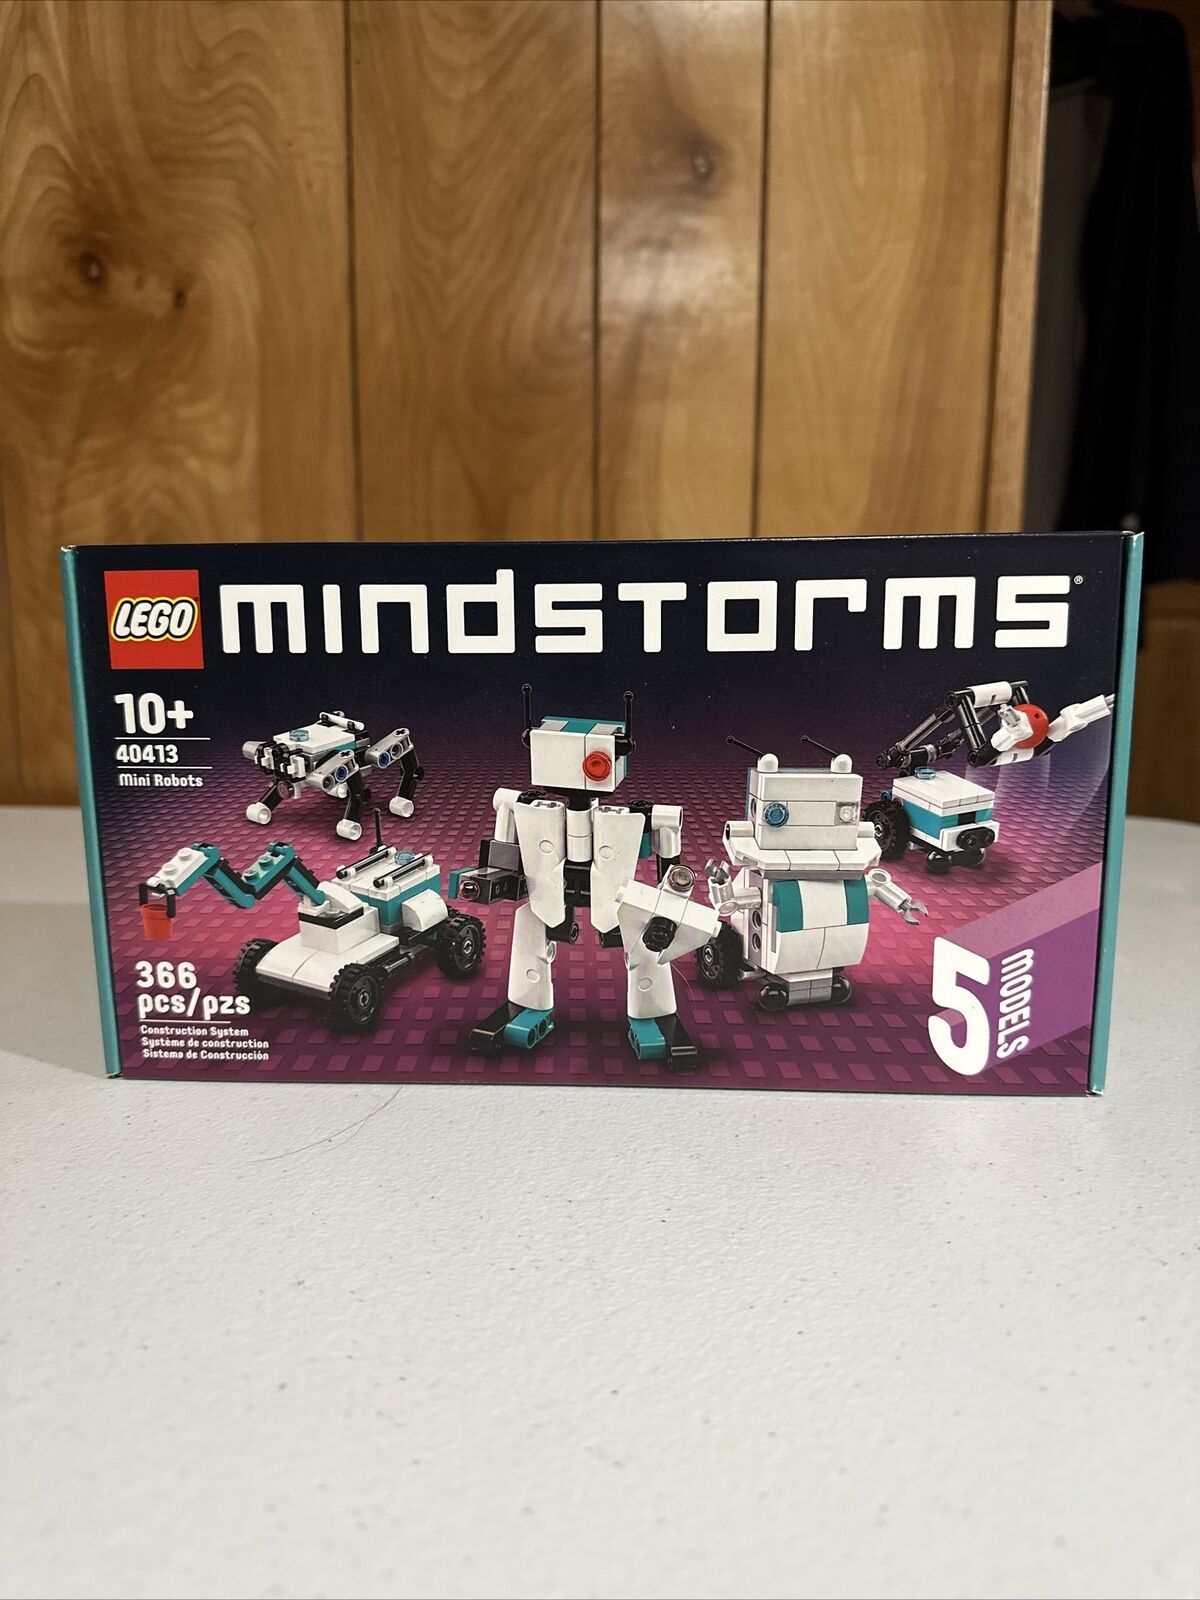 LEGO MINDSTORMS: Mini Robots (40413)